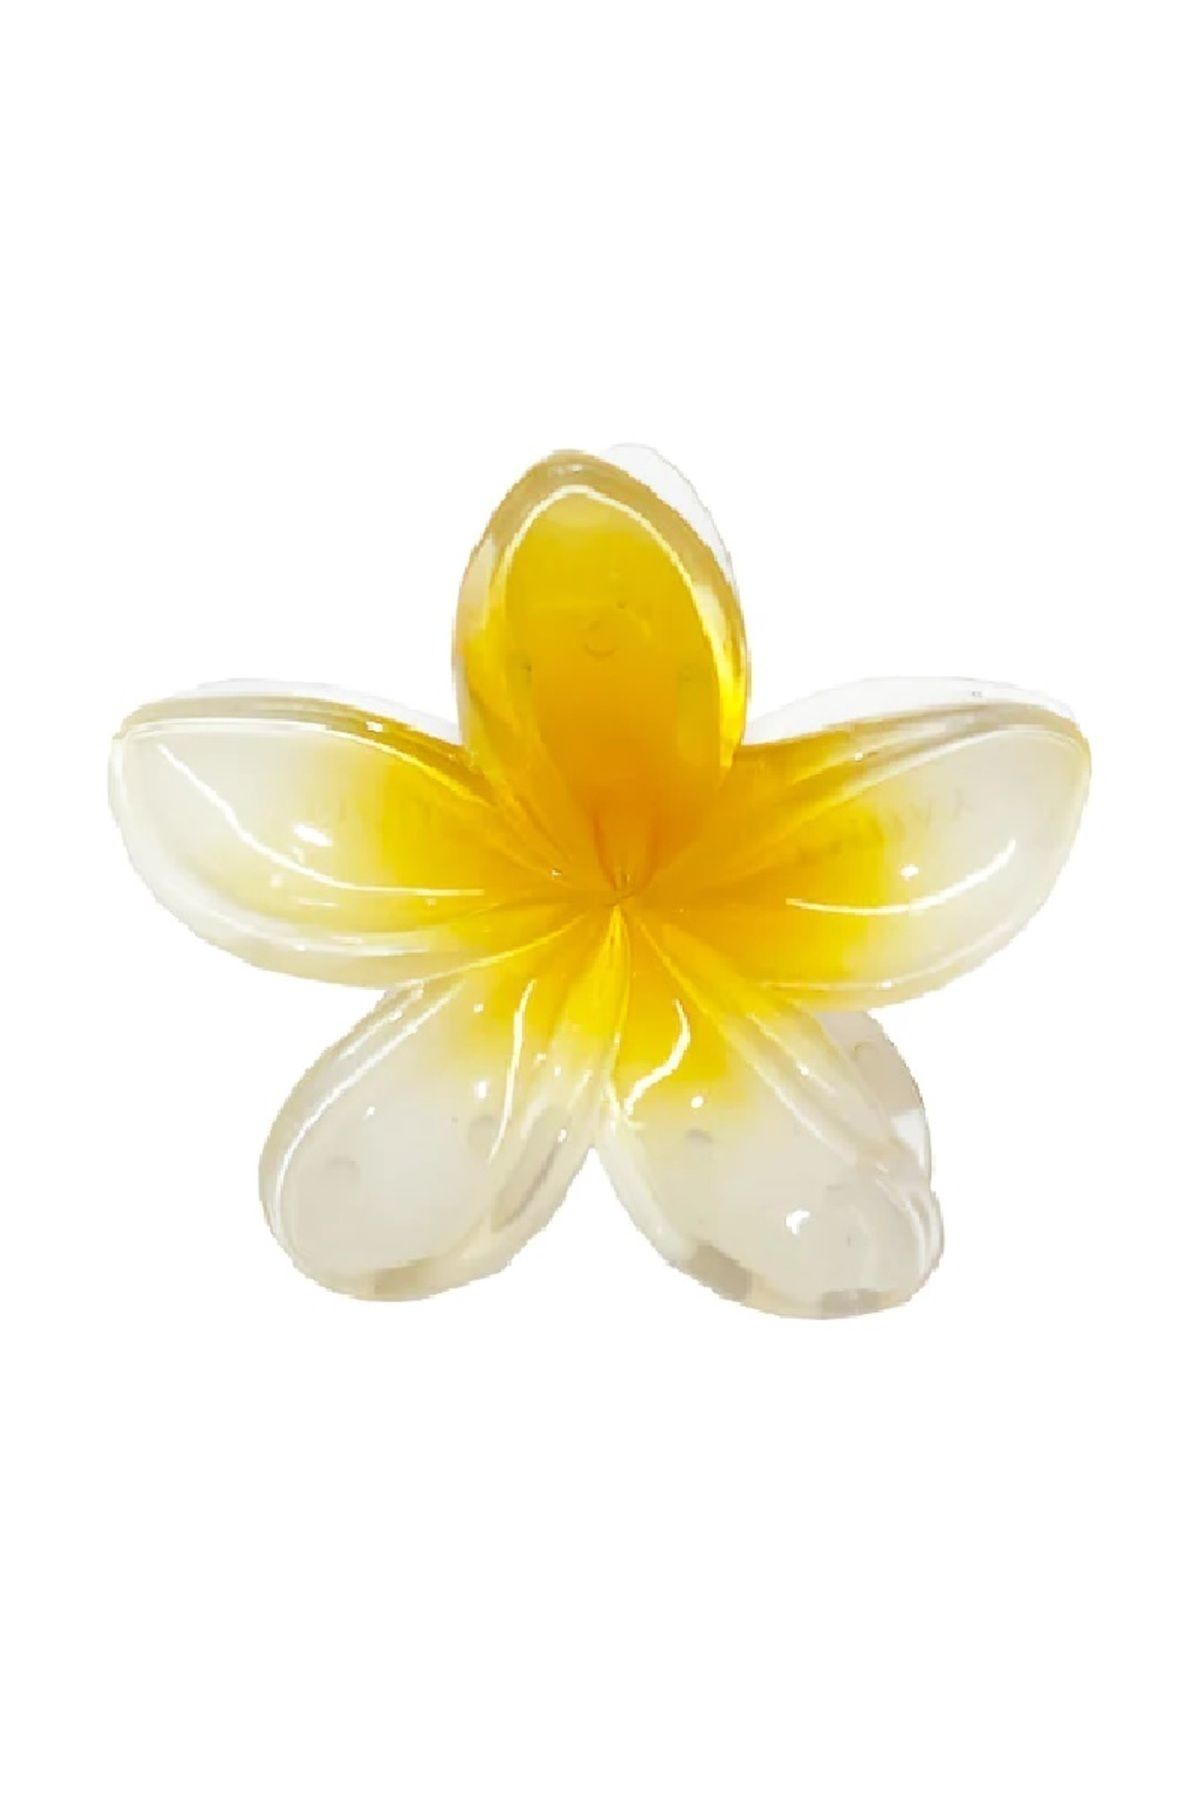 Roberta Lorenz Sarı Lotus Mandal Toka | Çiçek Toka | Aloha | Plumeria Kreasyonu 4 Al 3 Öde